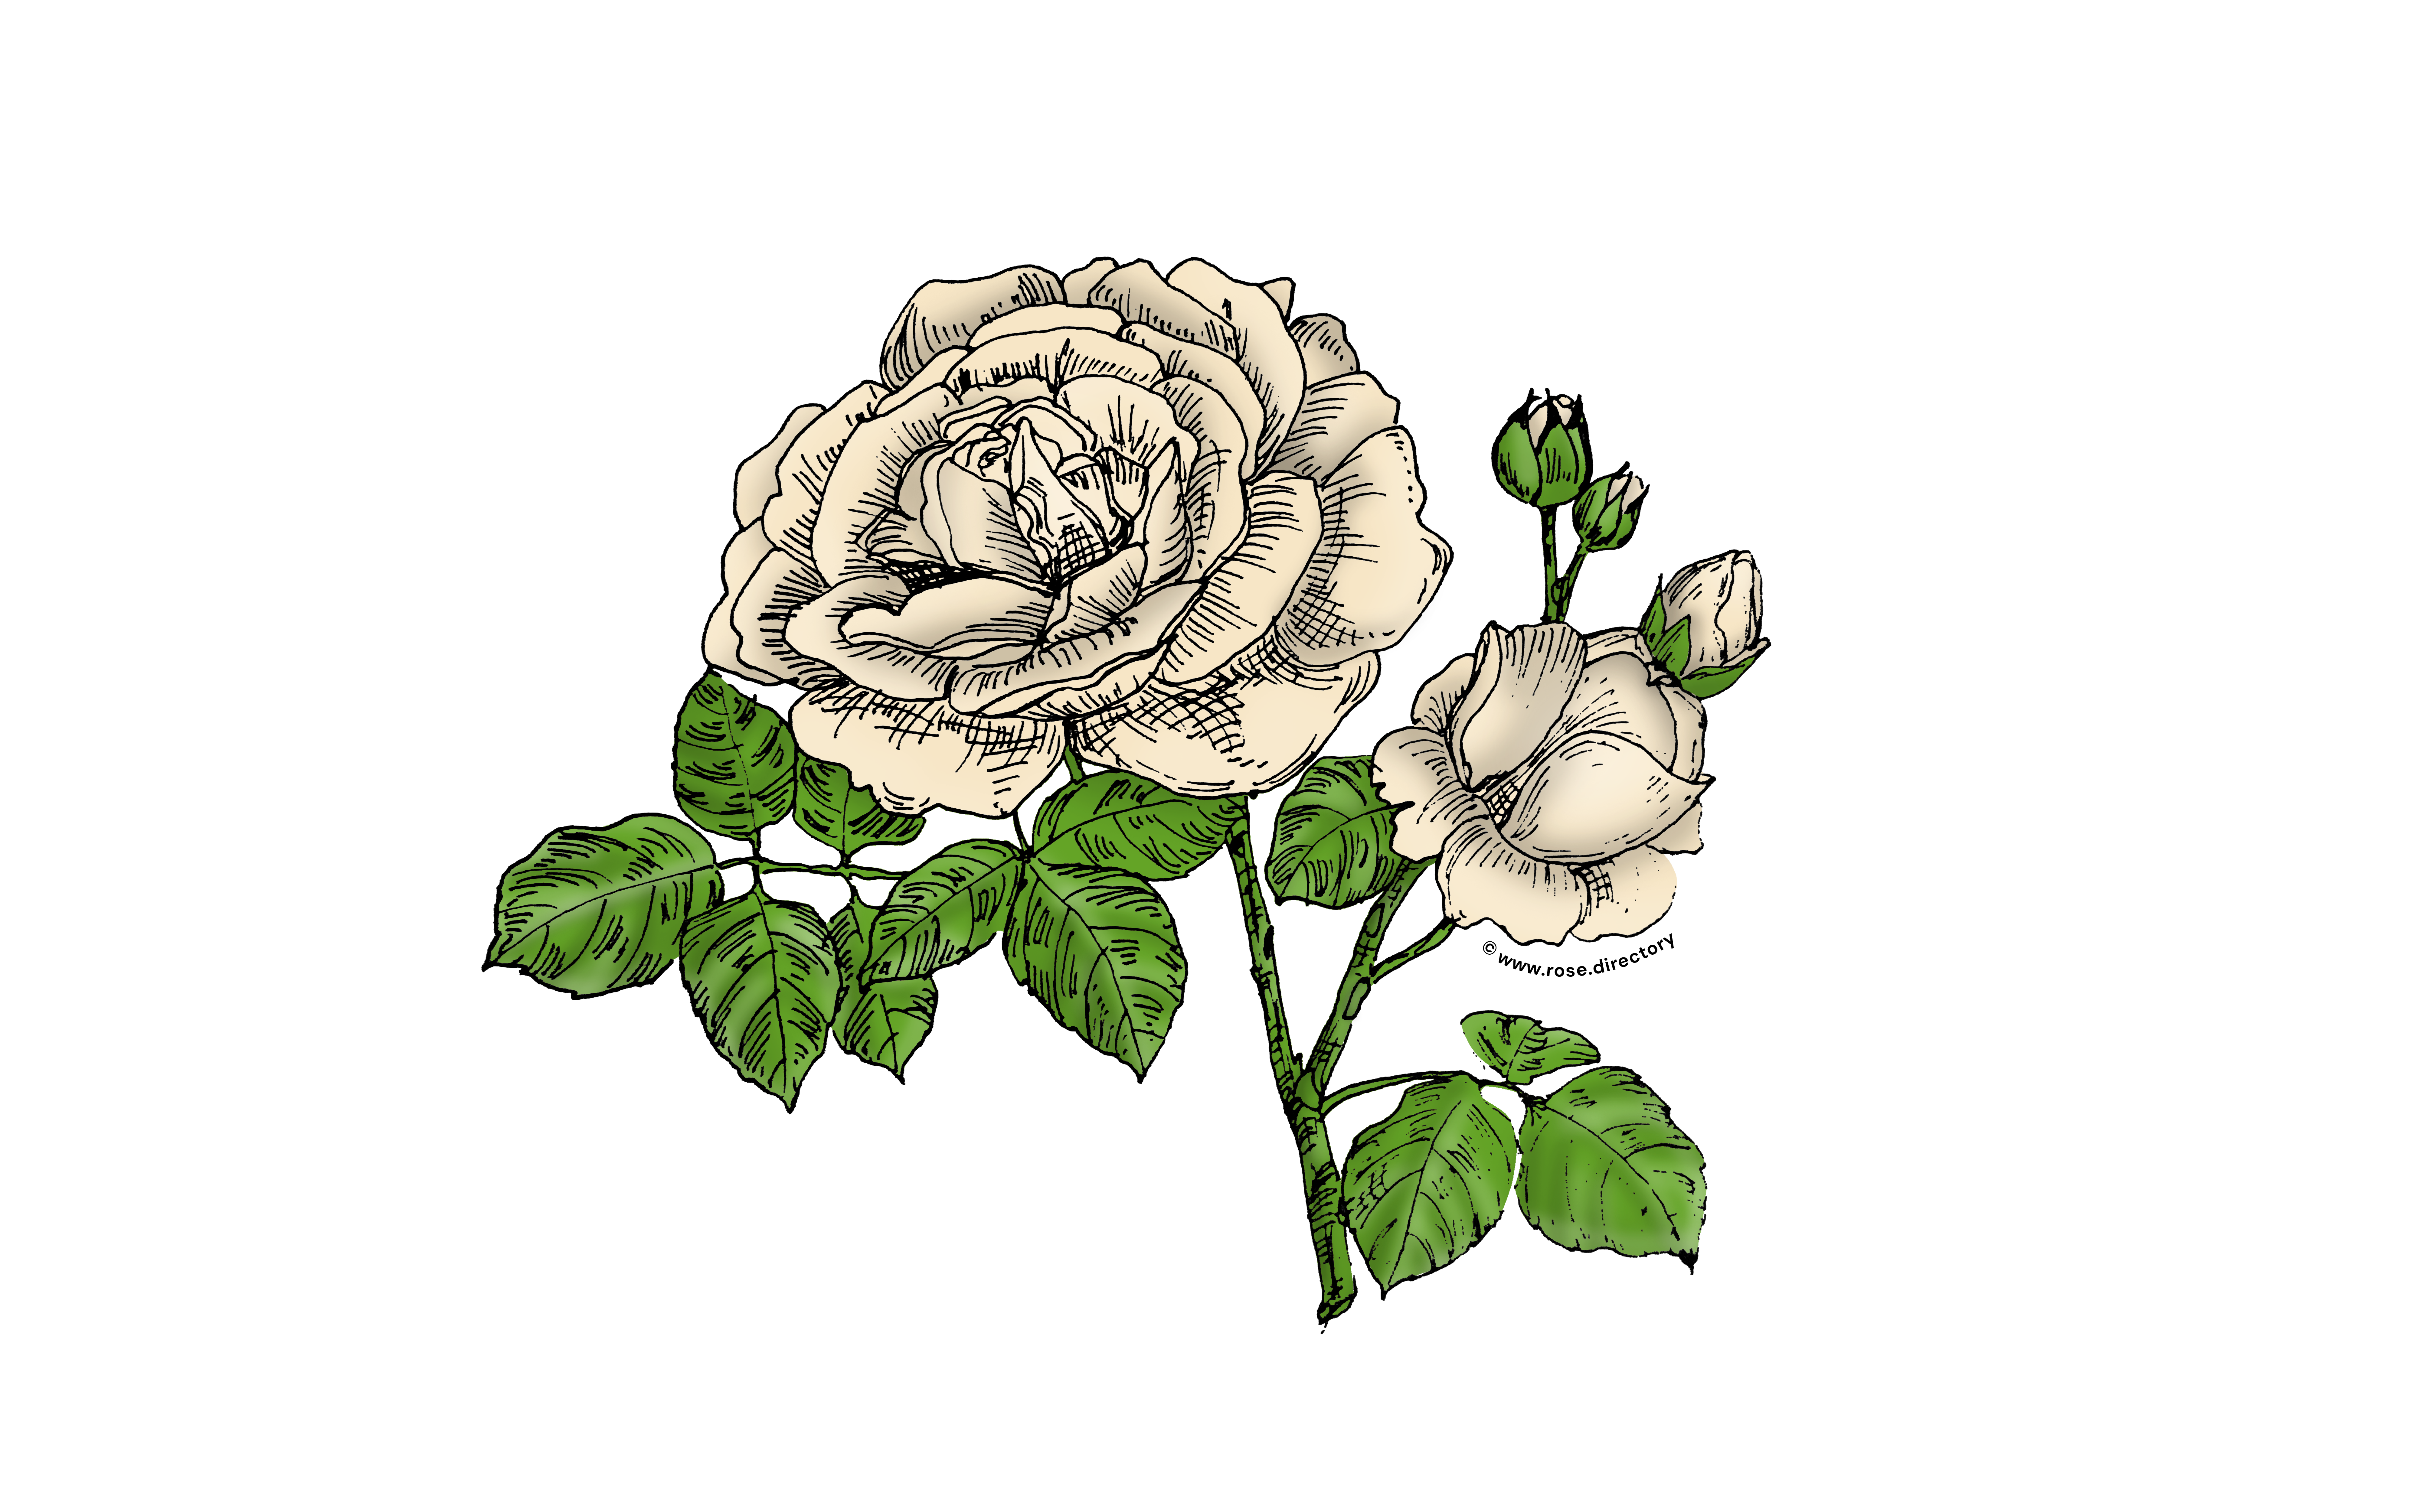 Cream Globular Rose Bloom Full 26-40 Petals In 3+ Rows